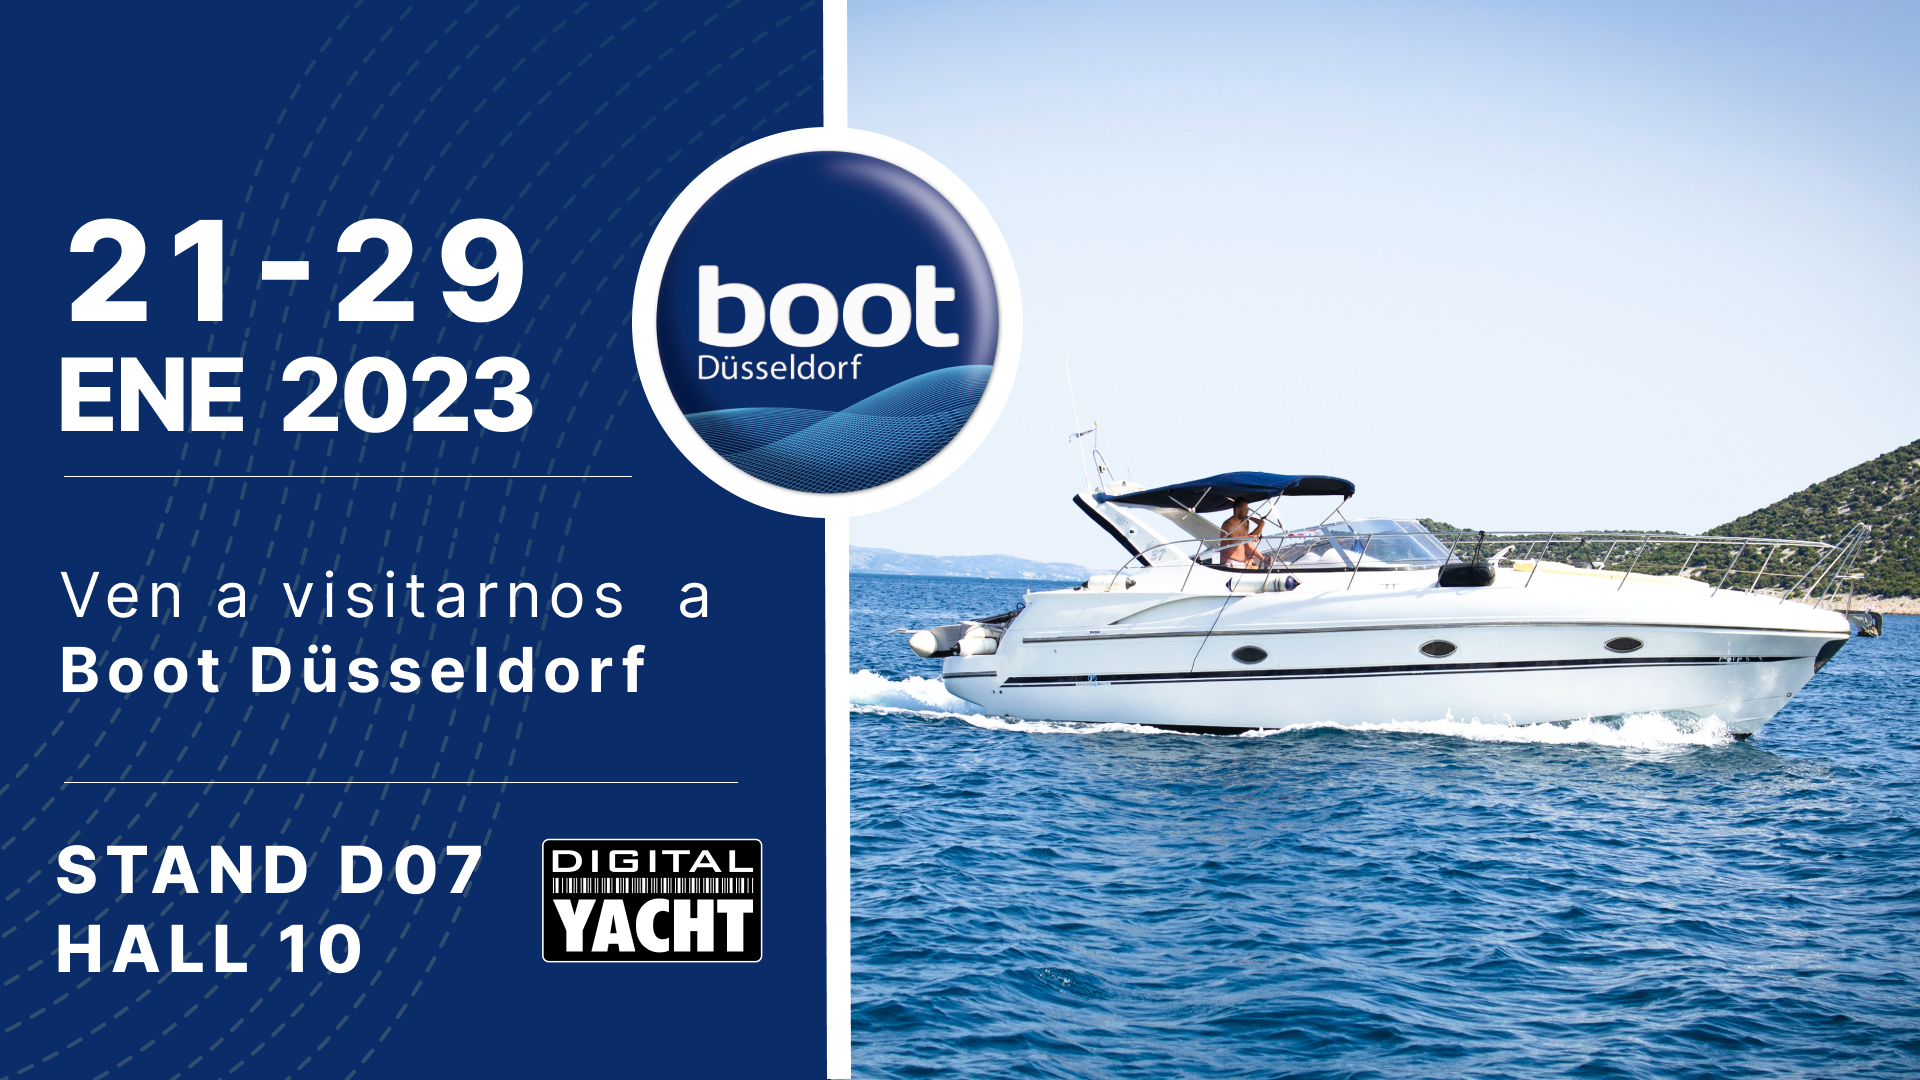 digitalyacht-boot-dusseldorf-2023